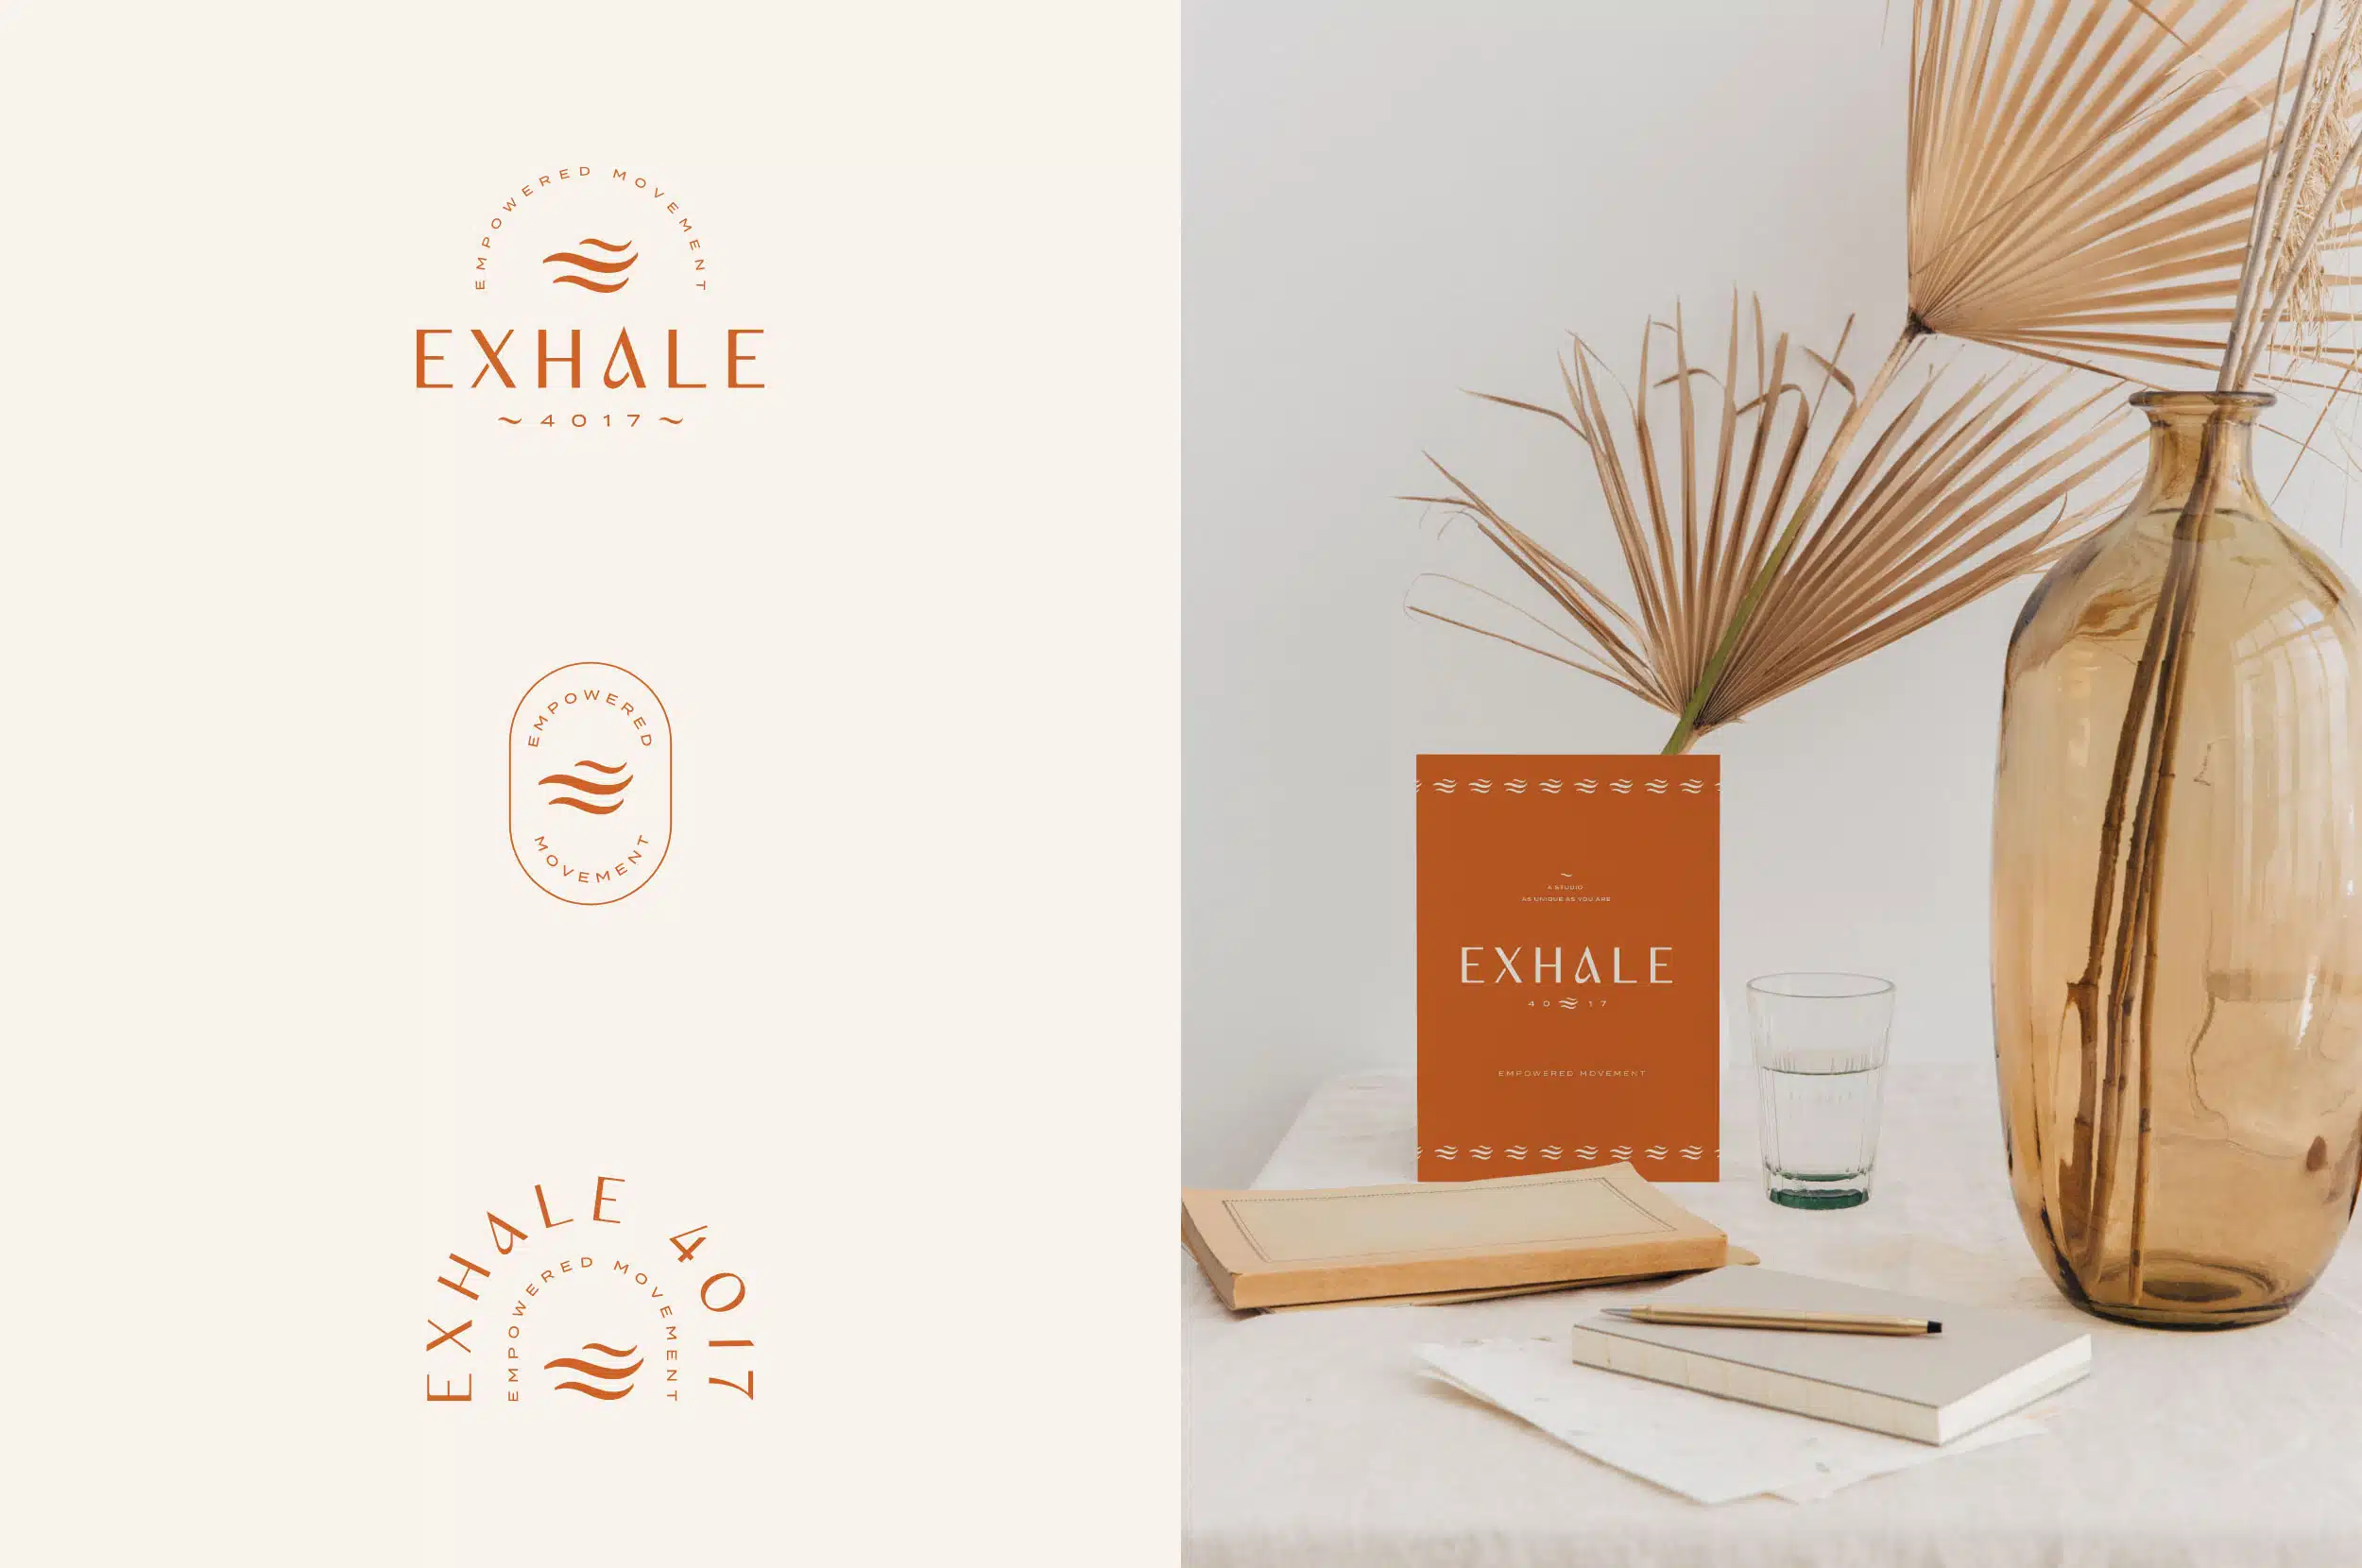 exhale 4017 branding for pilates studio